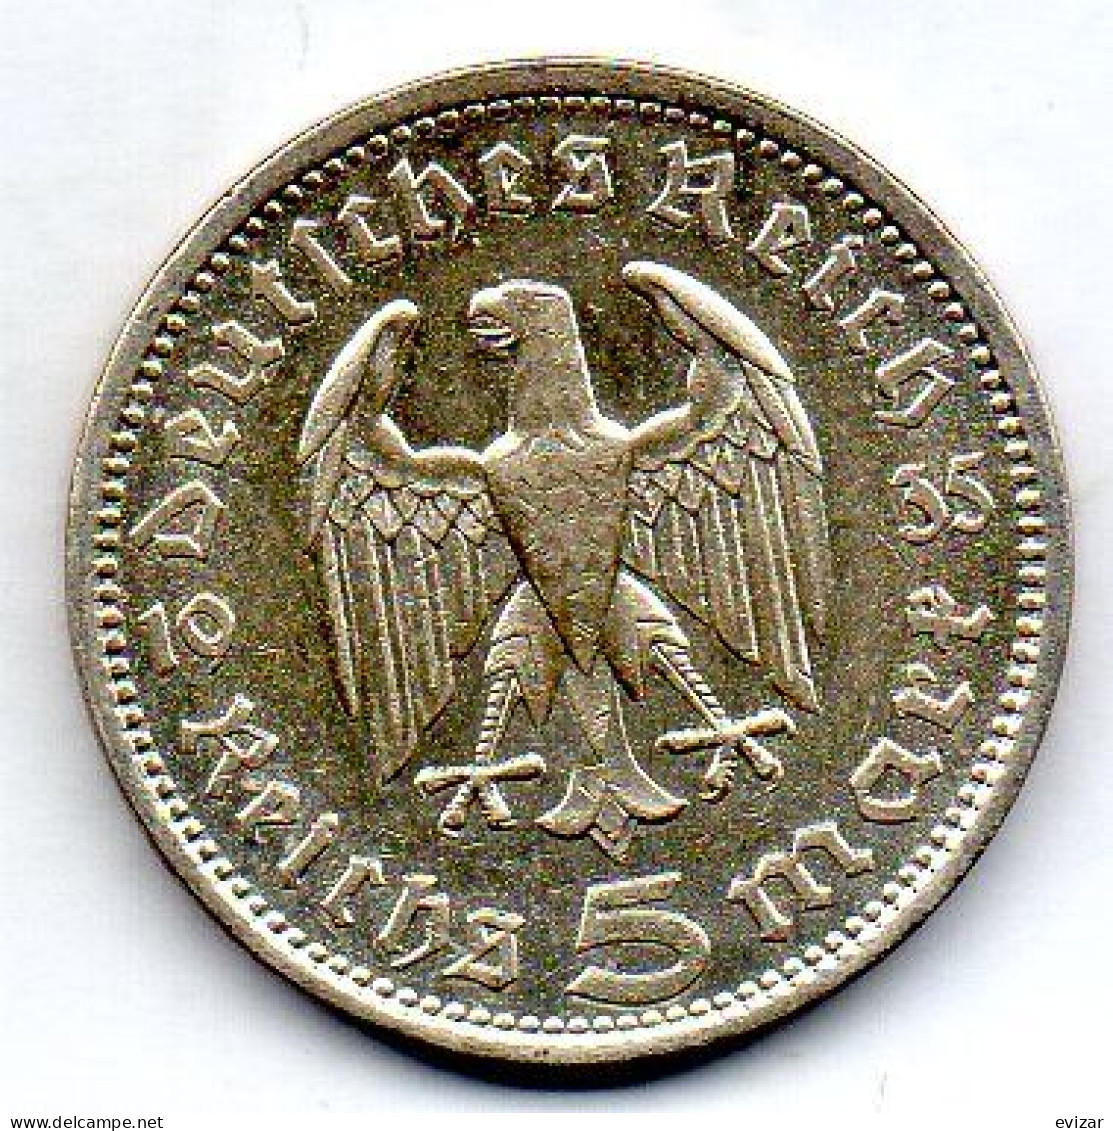 GERMANY - THIRD REICH, 5 Reichs Mark, Silver, Year 1935-A, KM # 86 - 5 Reichsmark